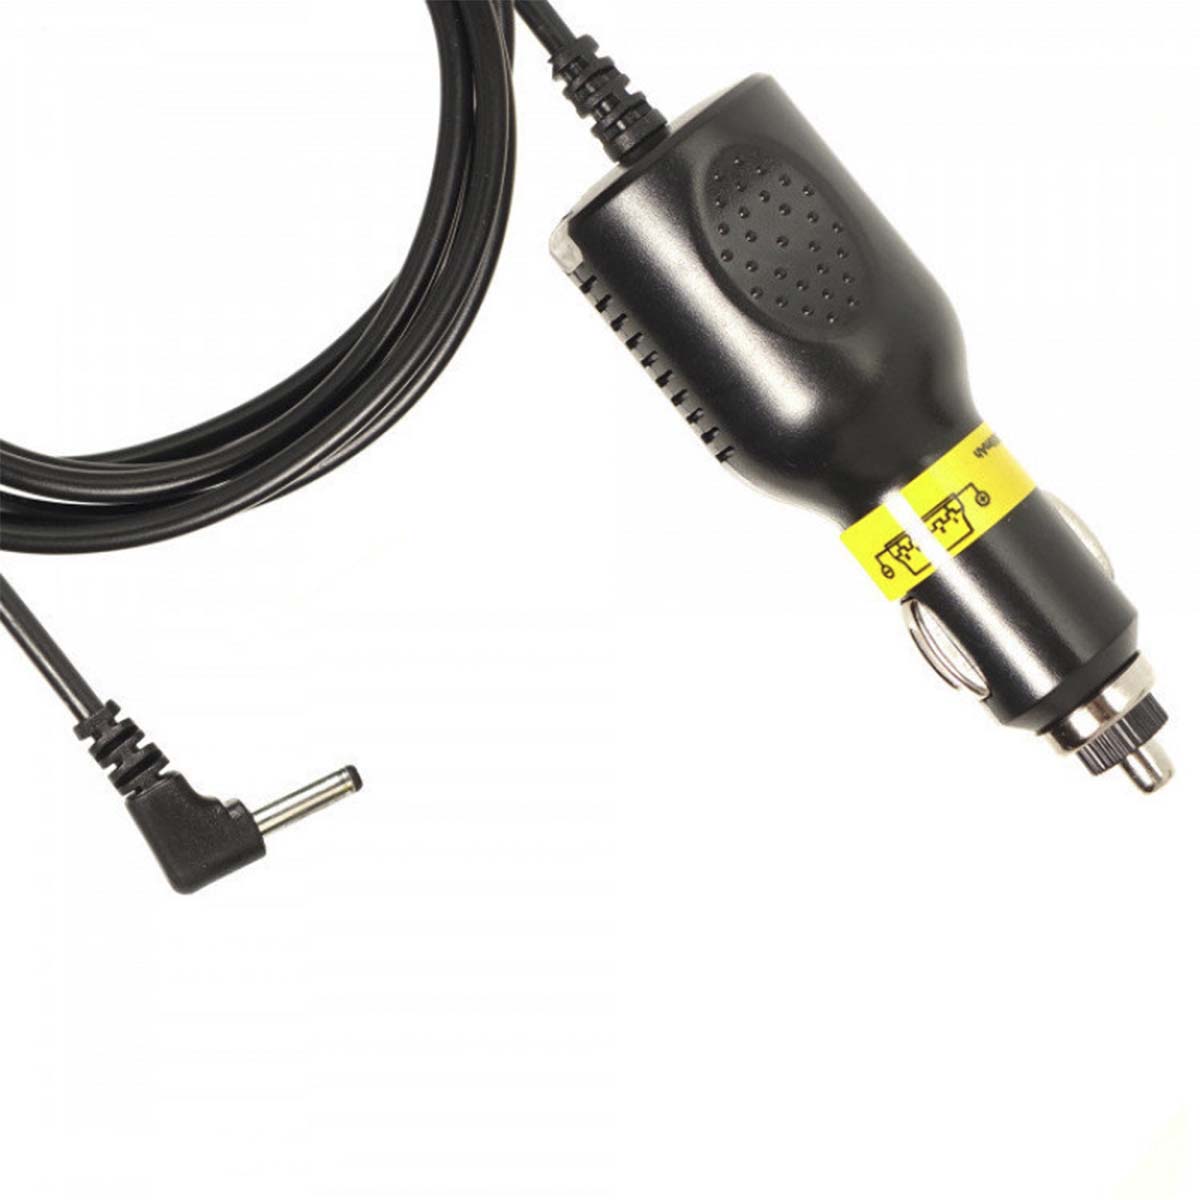 АЗУ (Автомобильное зарядное устройство) LP5 25, с кабелем питания прямой 2.5*0.7, 5V-2A, длина 1.5 метра, цвет черный